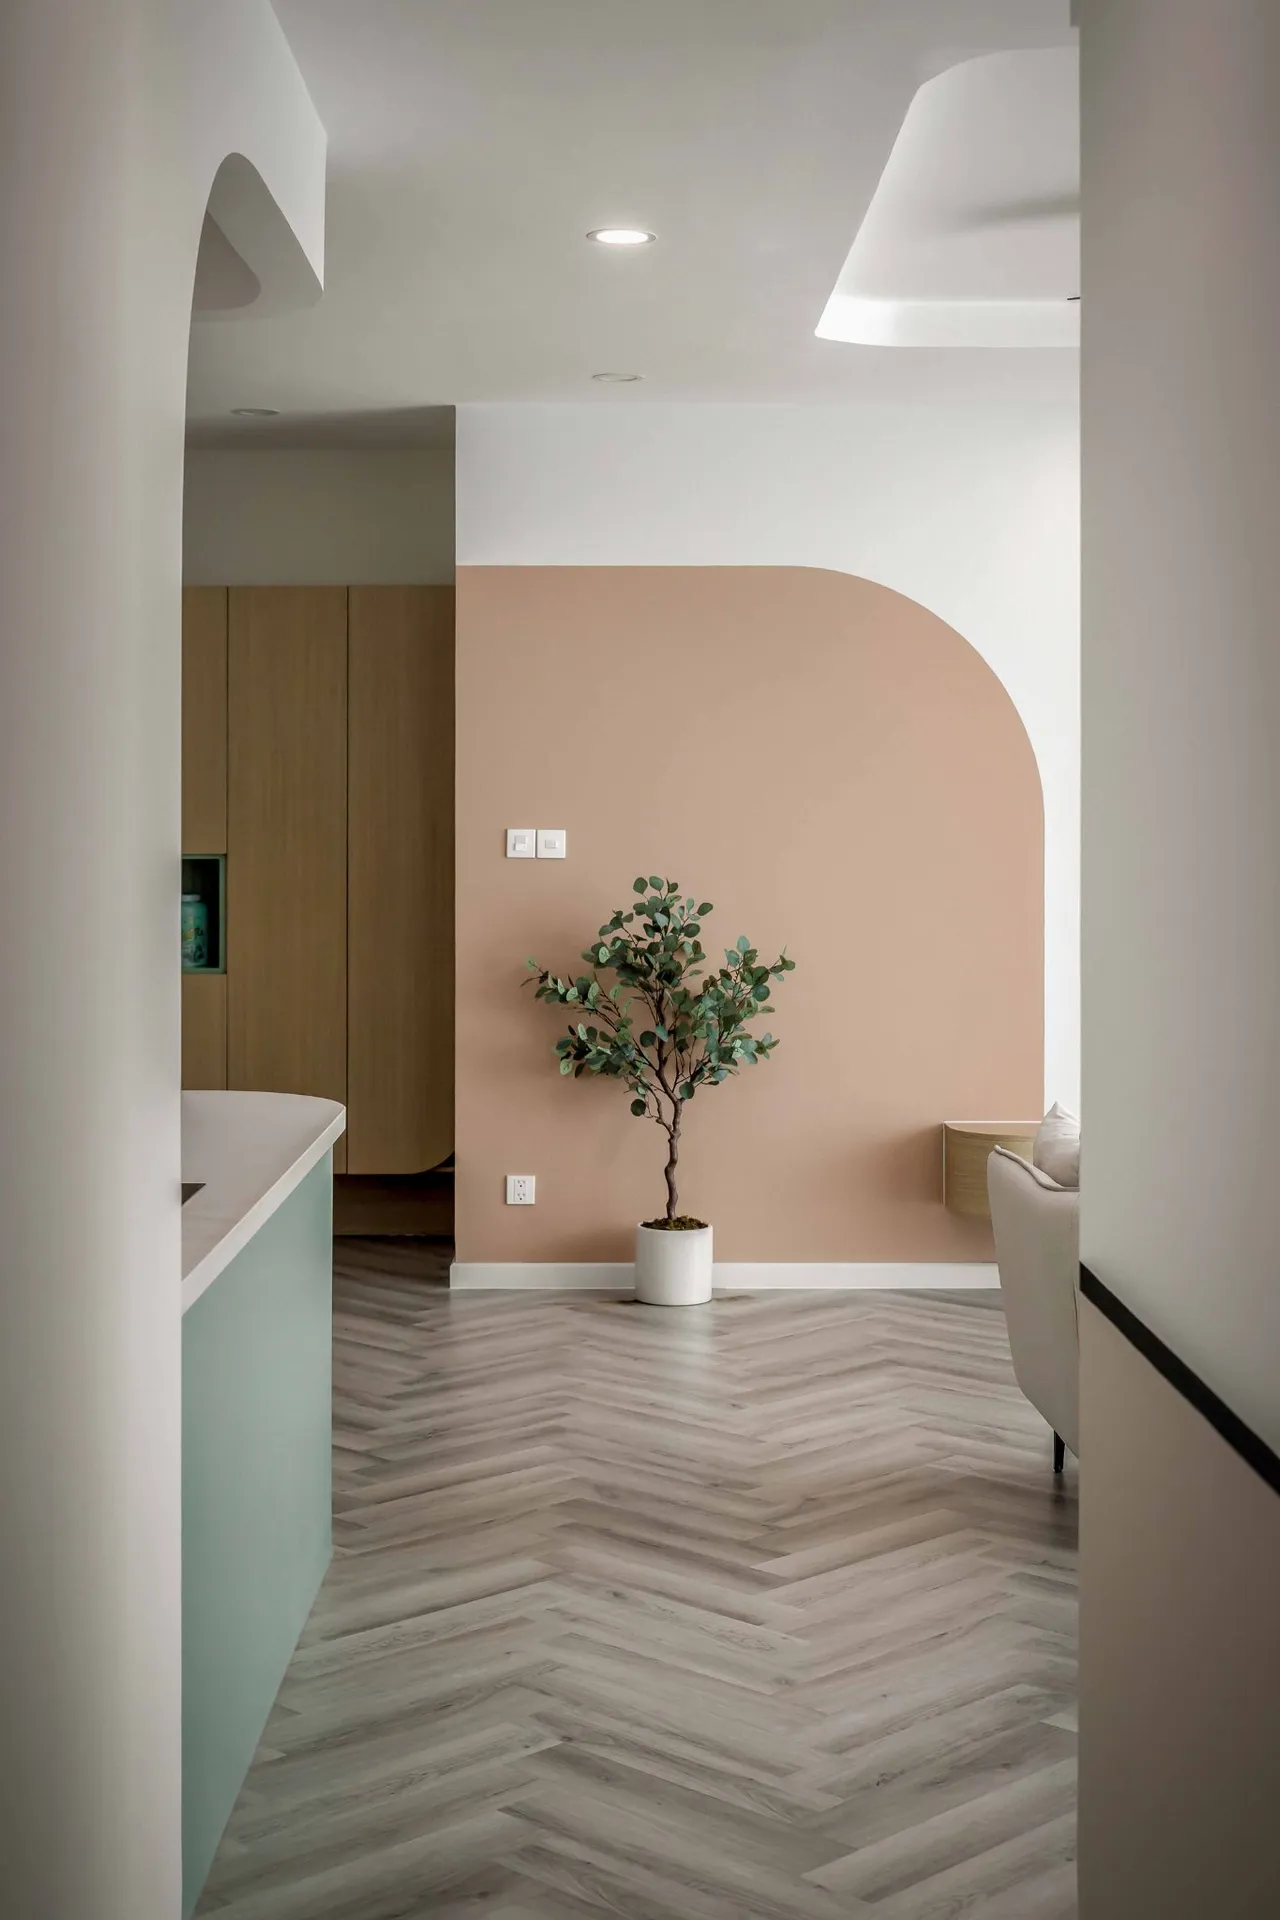 Hoàn thiện nội thất hành lang Căn hộ The Riviera Point Quận 7 phong cách Tối giản Minimalist, phong cách Color Block